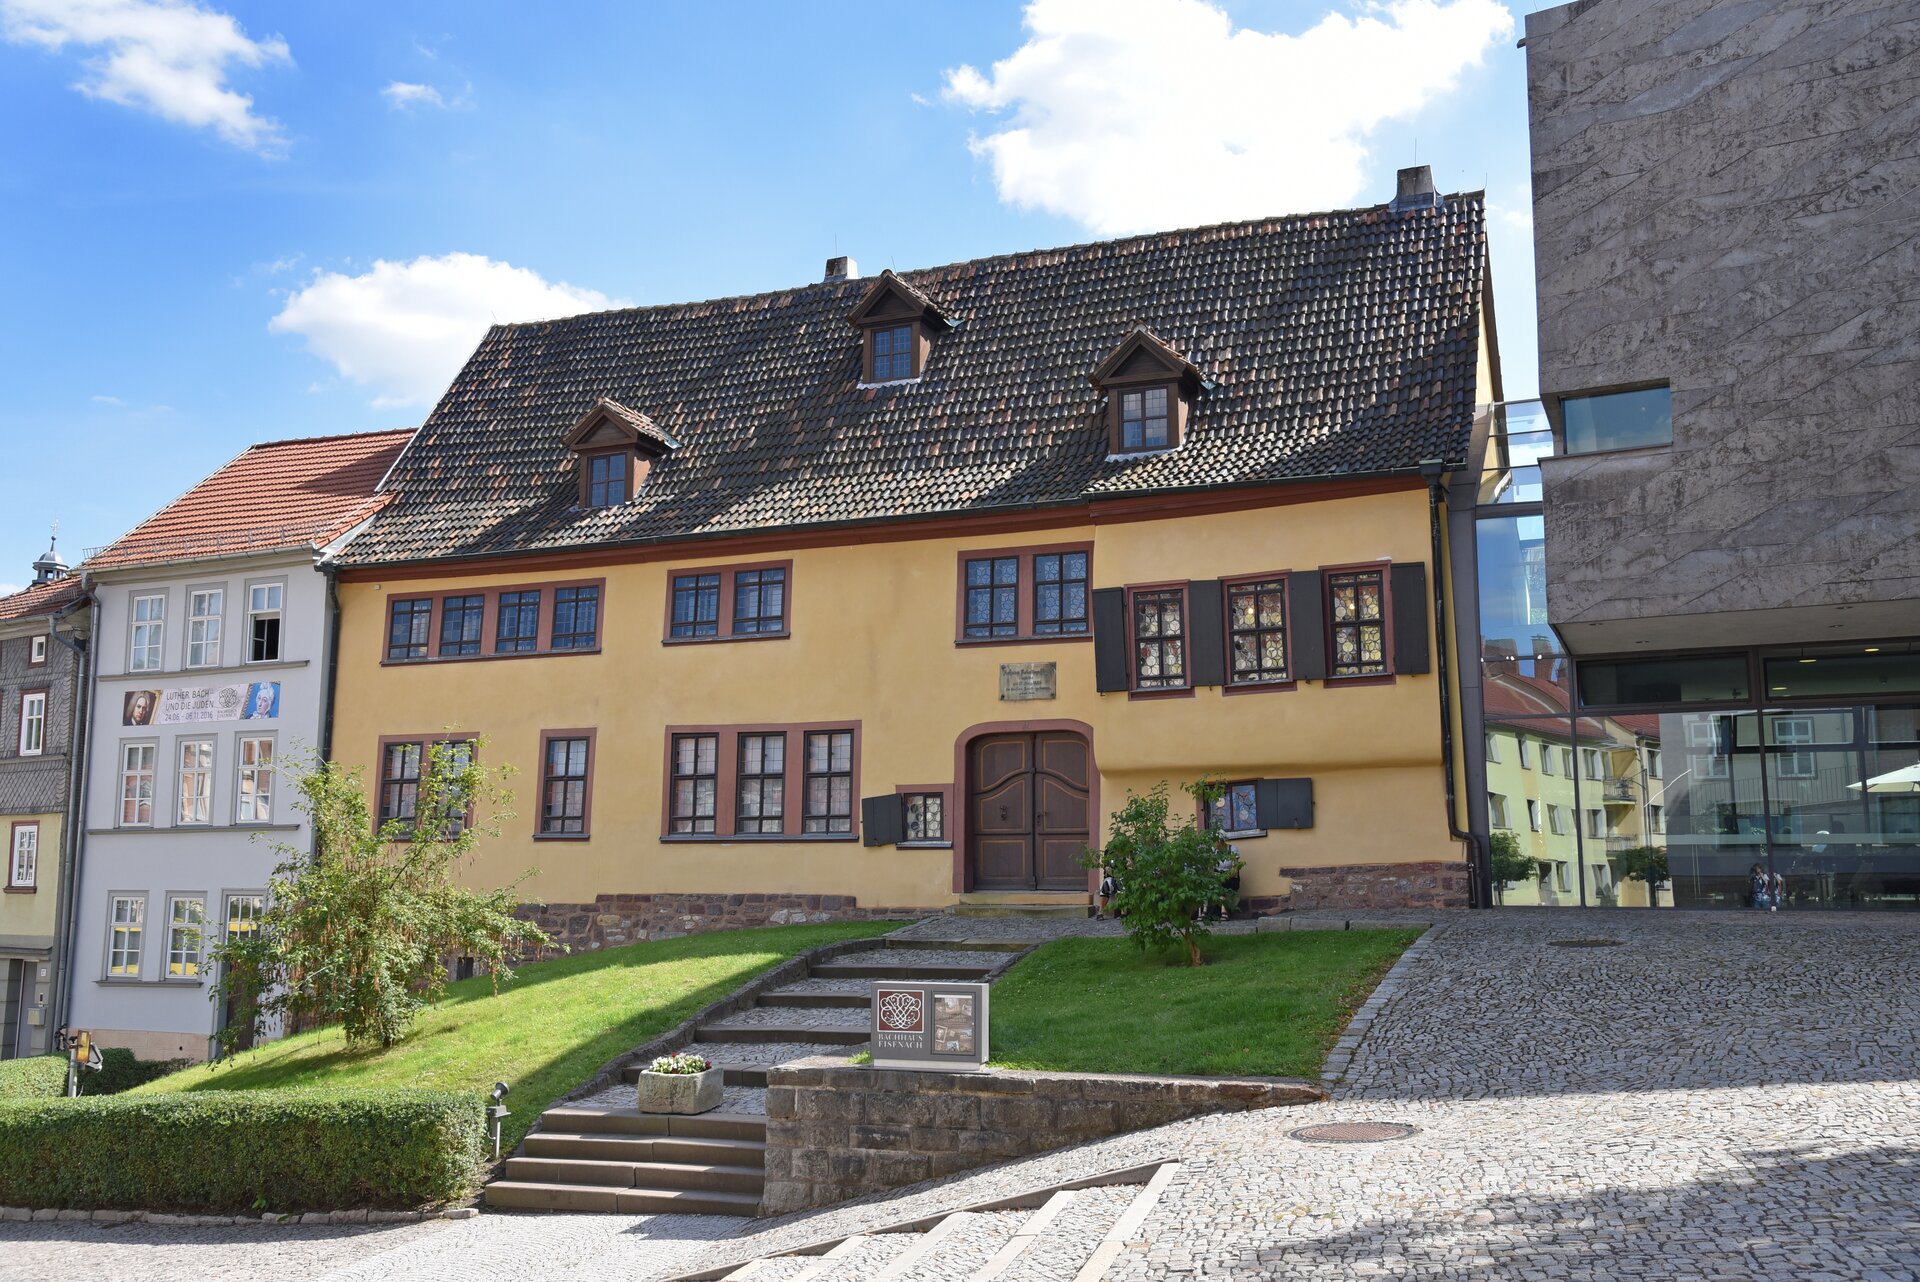 Fotografia przedstawia dom w Eisenach, w którym mieszkał młody Jan Sebastian Bach. Na fotografii widać żółty duży dom. Główne miejsce zajmuje wejście do budynku. Okna mają brązowe obramowania i okiennice. Przed domem widać kamienną ławkę, schody i zieleń.